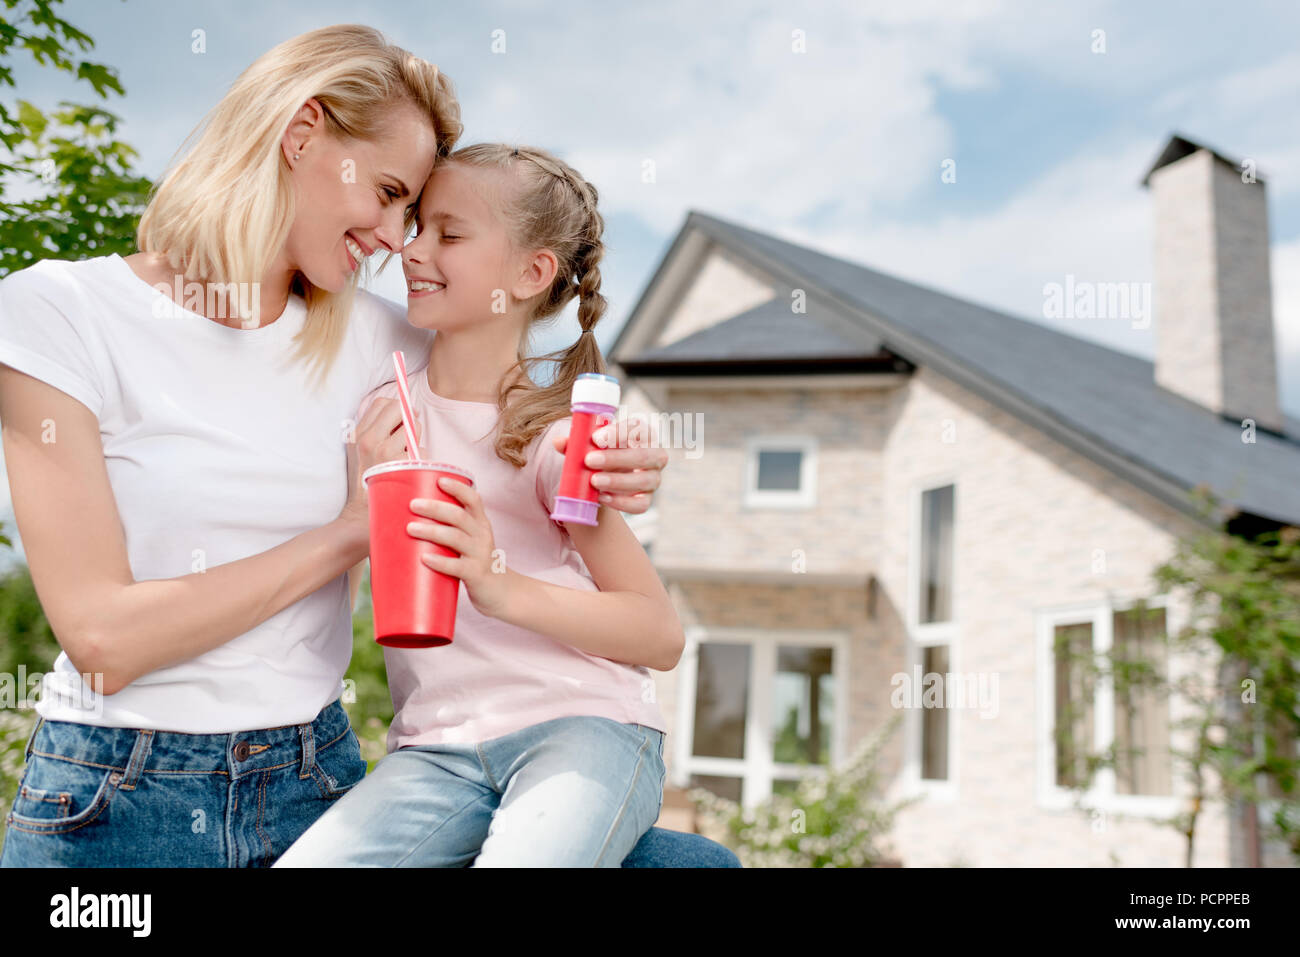 Gerne Frau sitzt Stirn an Stirn mit Tochter und Holding bubble Blower vor neues Haus Stockfoto